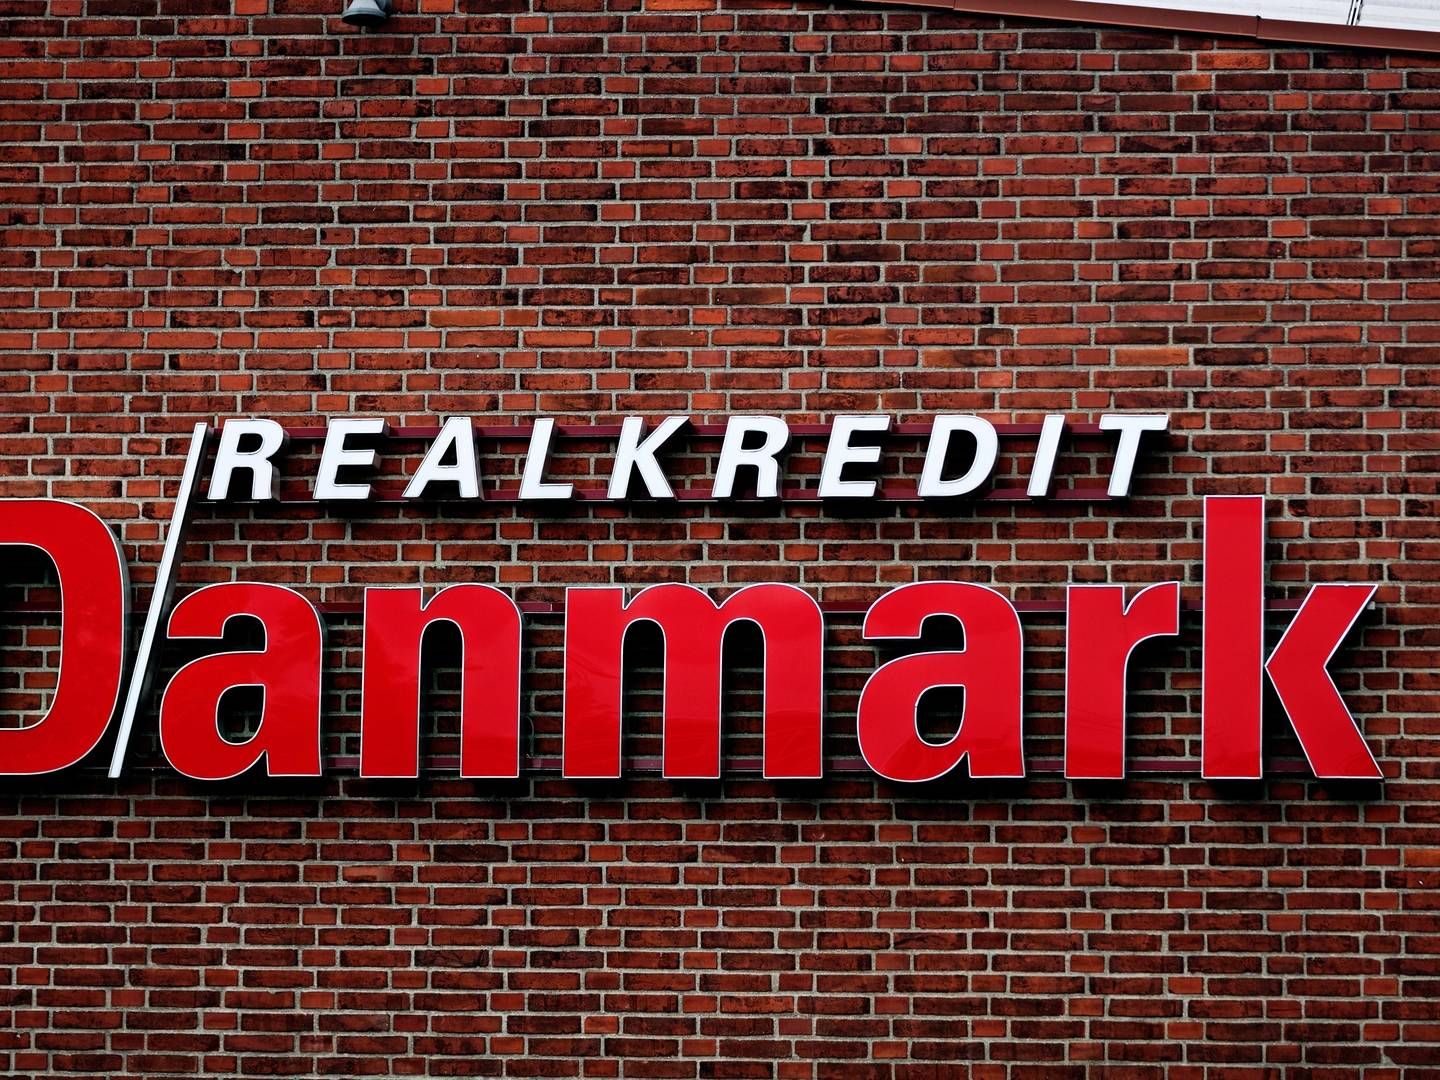 Realkredit Danmarks markedsandel er faldet i første halvdel af 2022. | Foto: PR/Realkredit Danmark